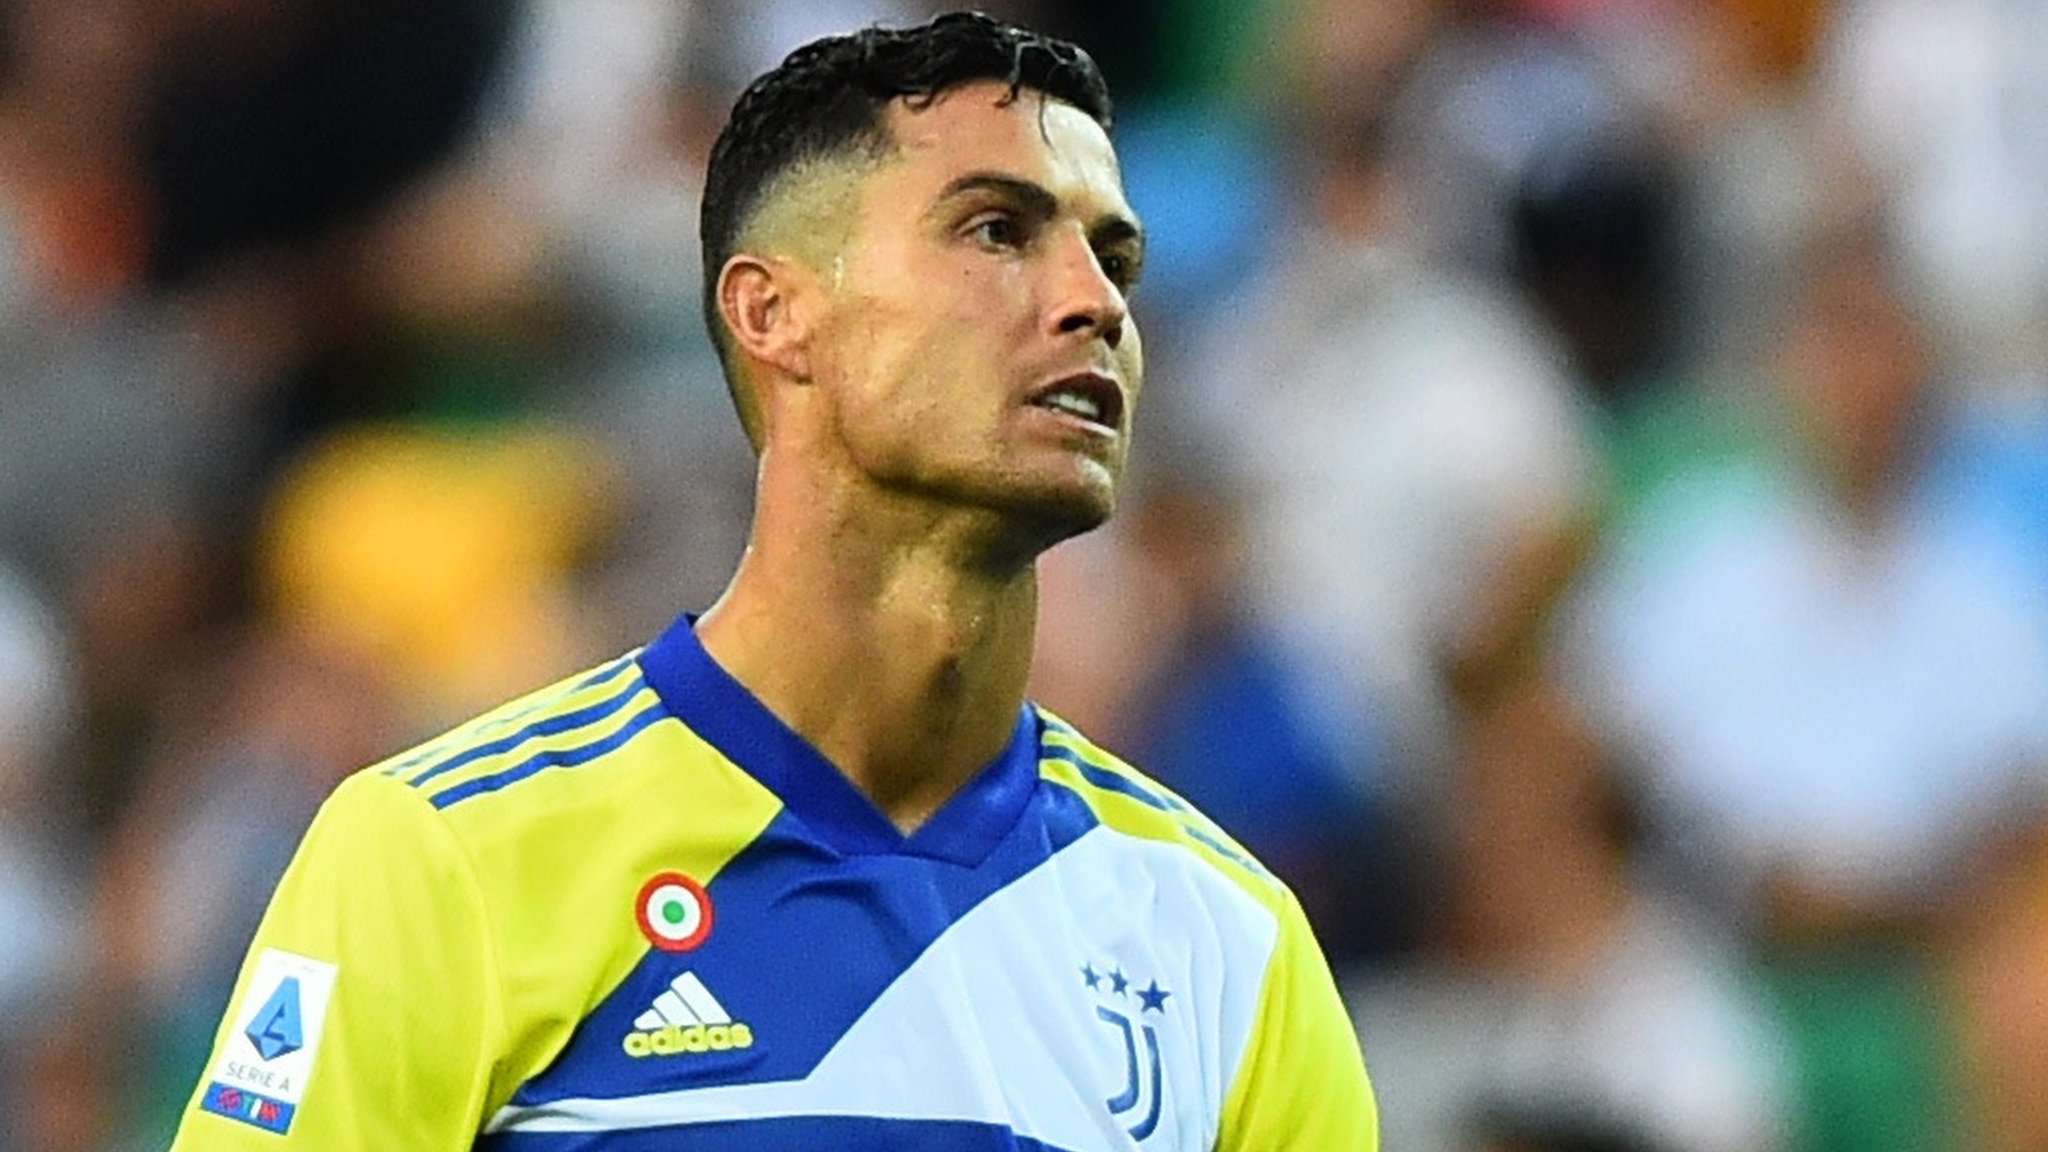 Le fils de Cristiano Ronaldo s'entraine à la Juventus - BBC News Afrique